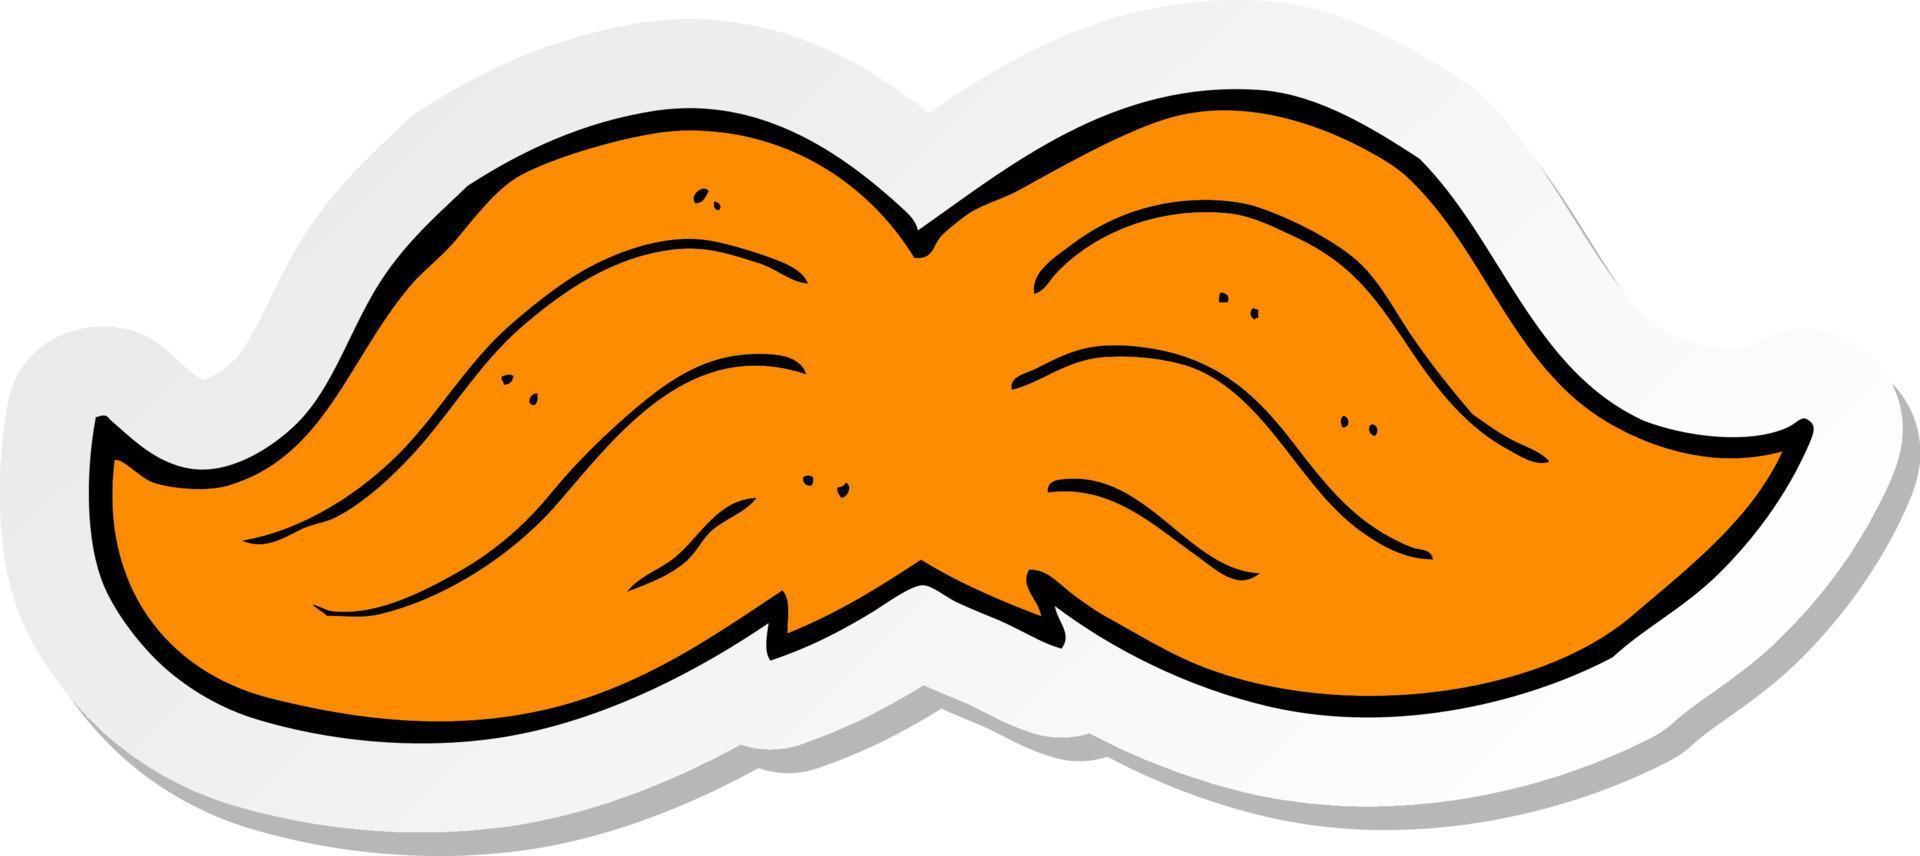 sticker of a cartoon ginger mustache vector